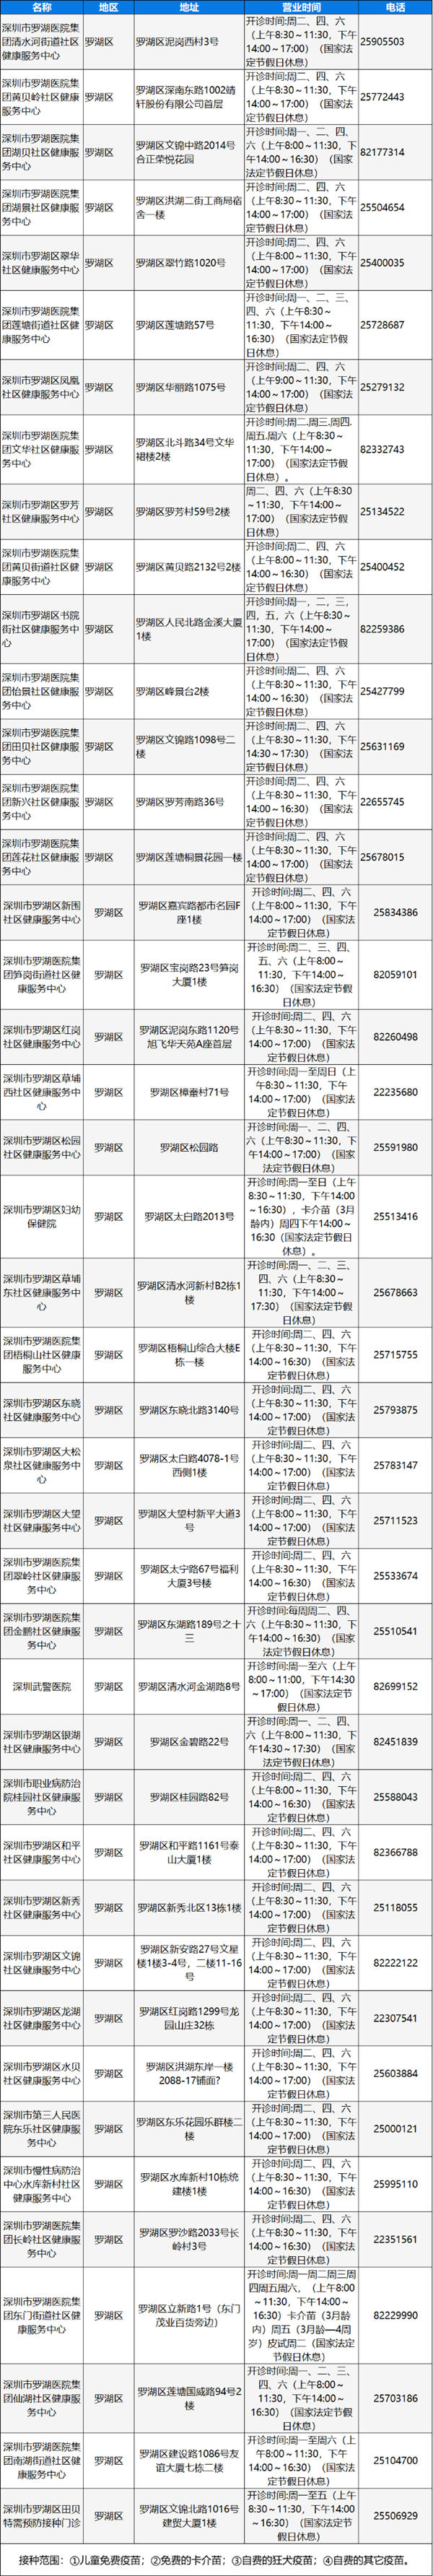 深圳罗湖区狂犬疫苗接种地址及电话